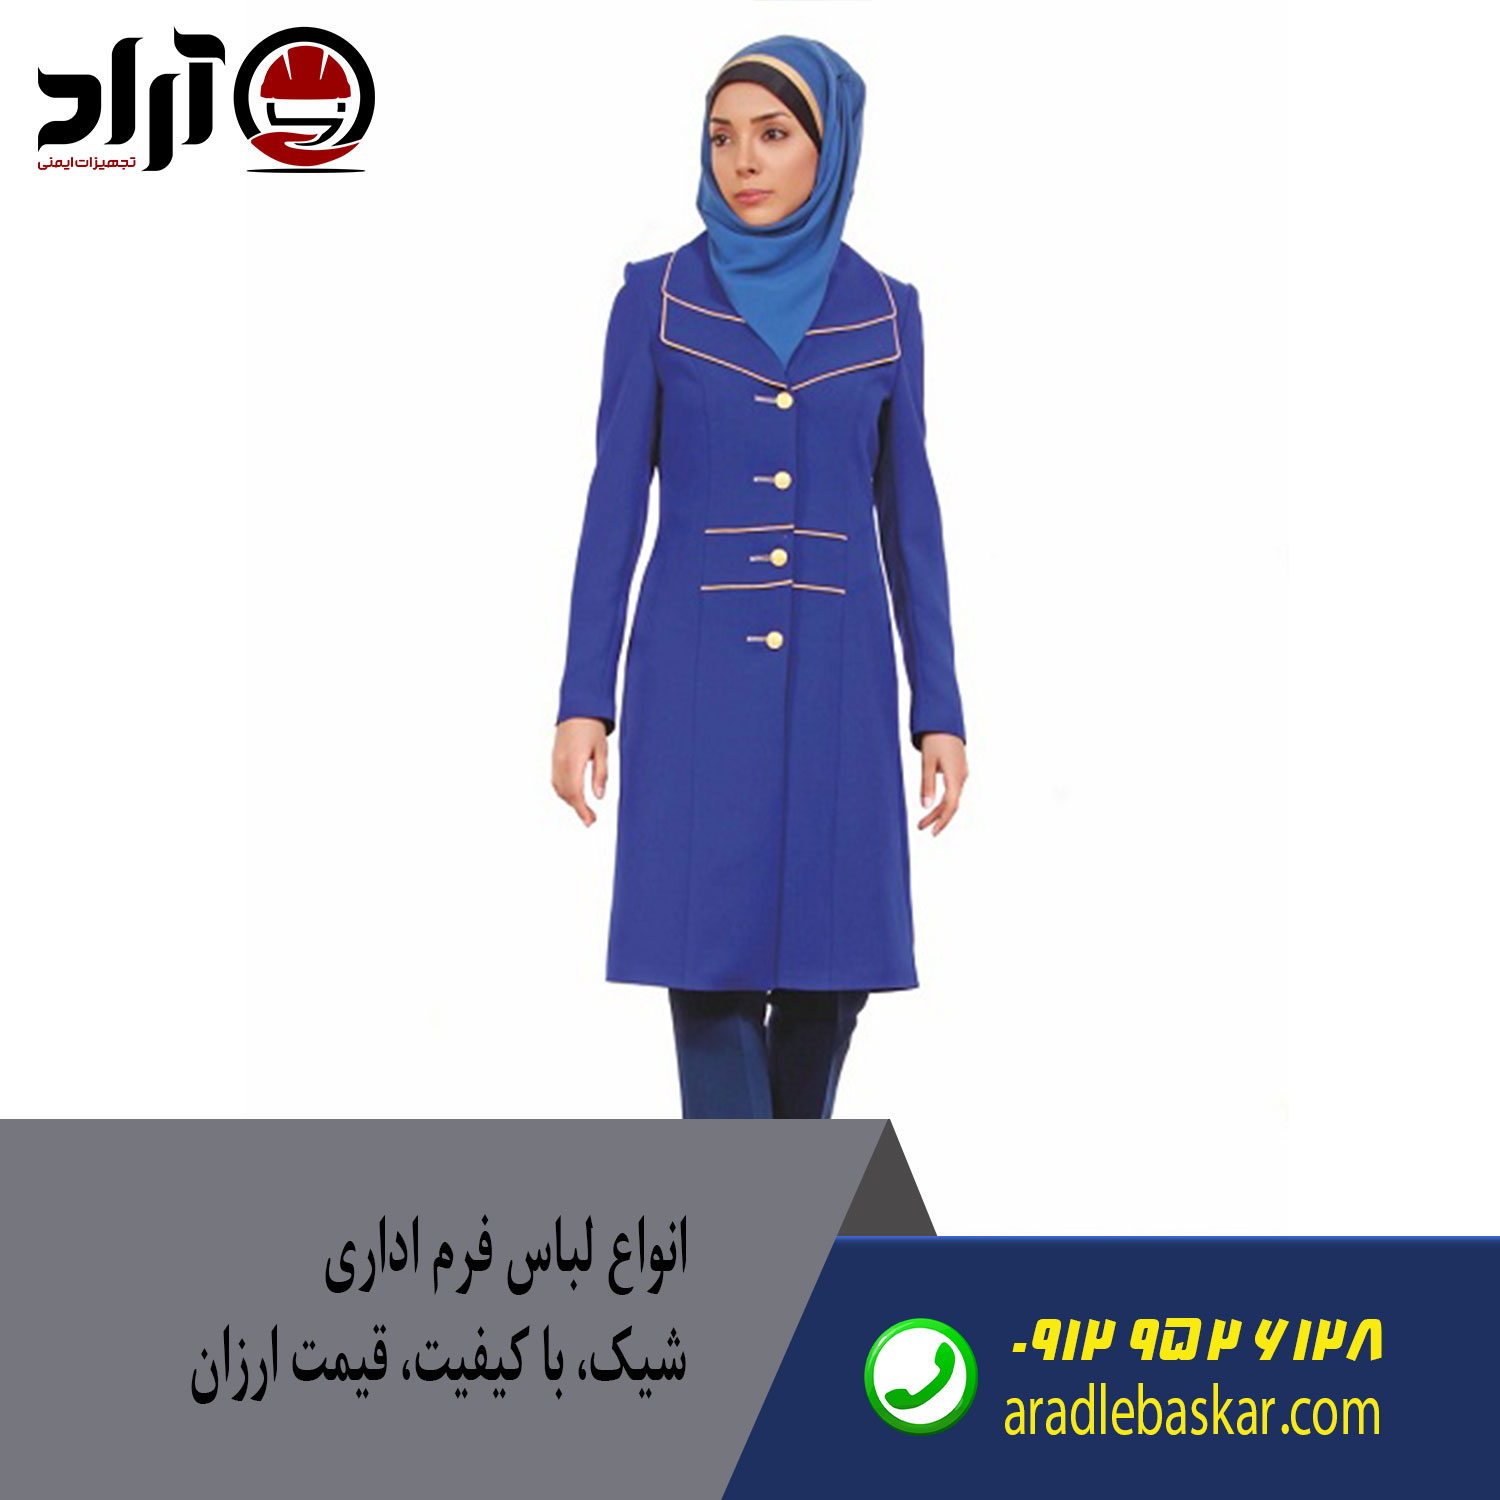 فروش لباس فرم اداری در اصفهان